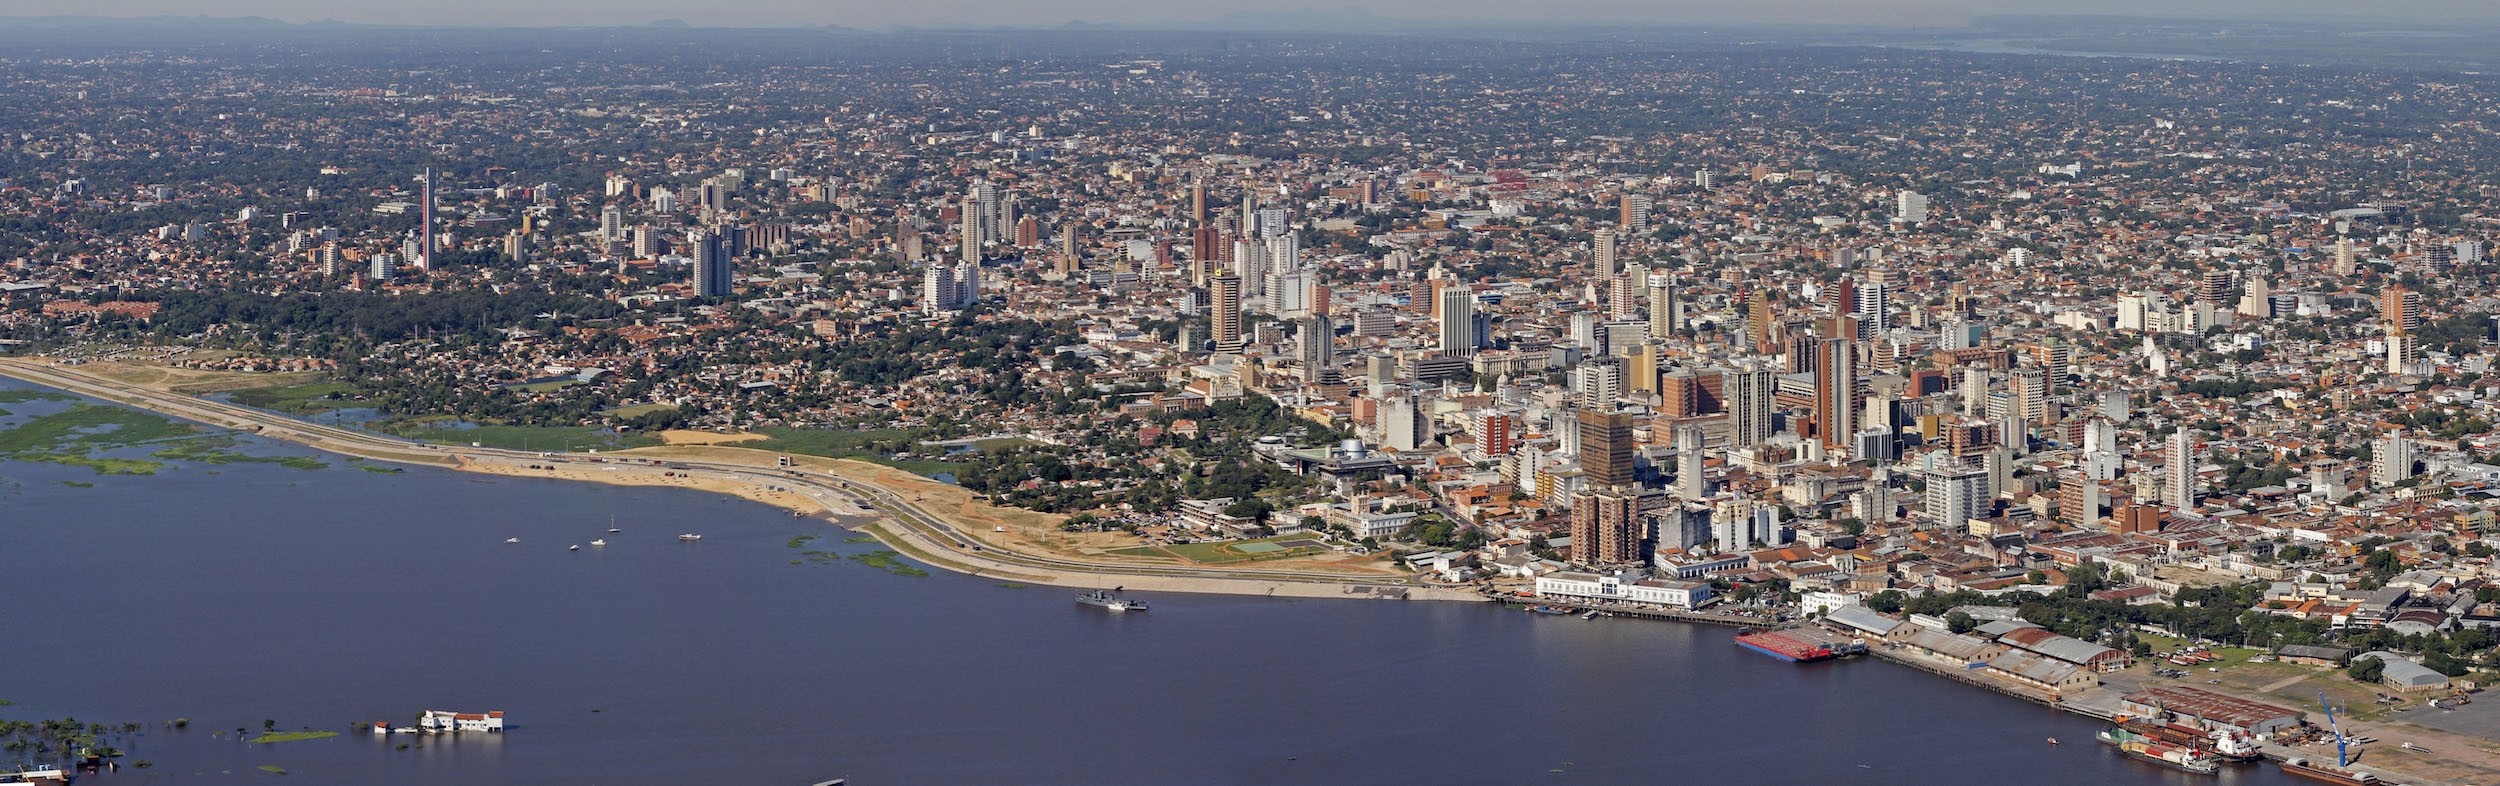 Asuncion, capitale du Paraguay